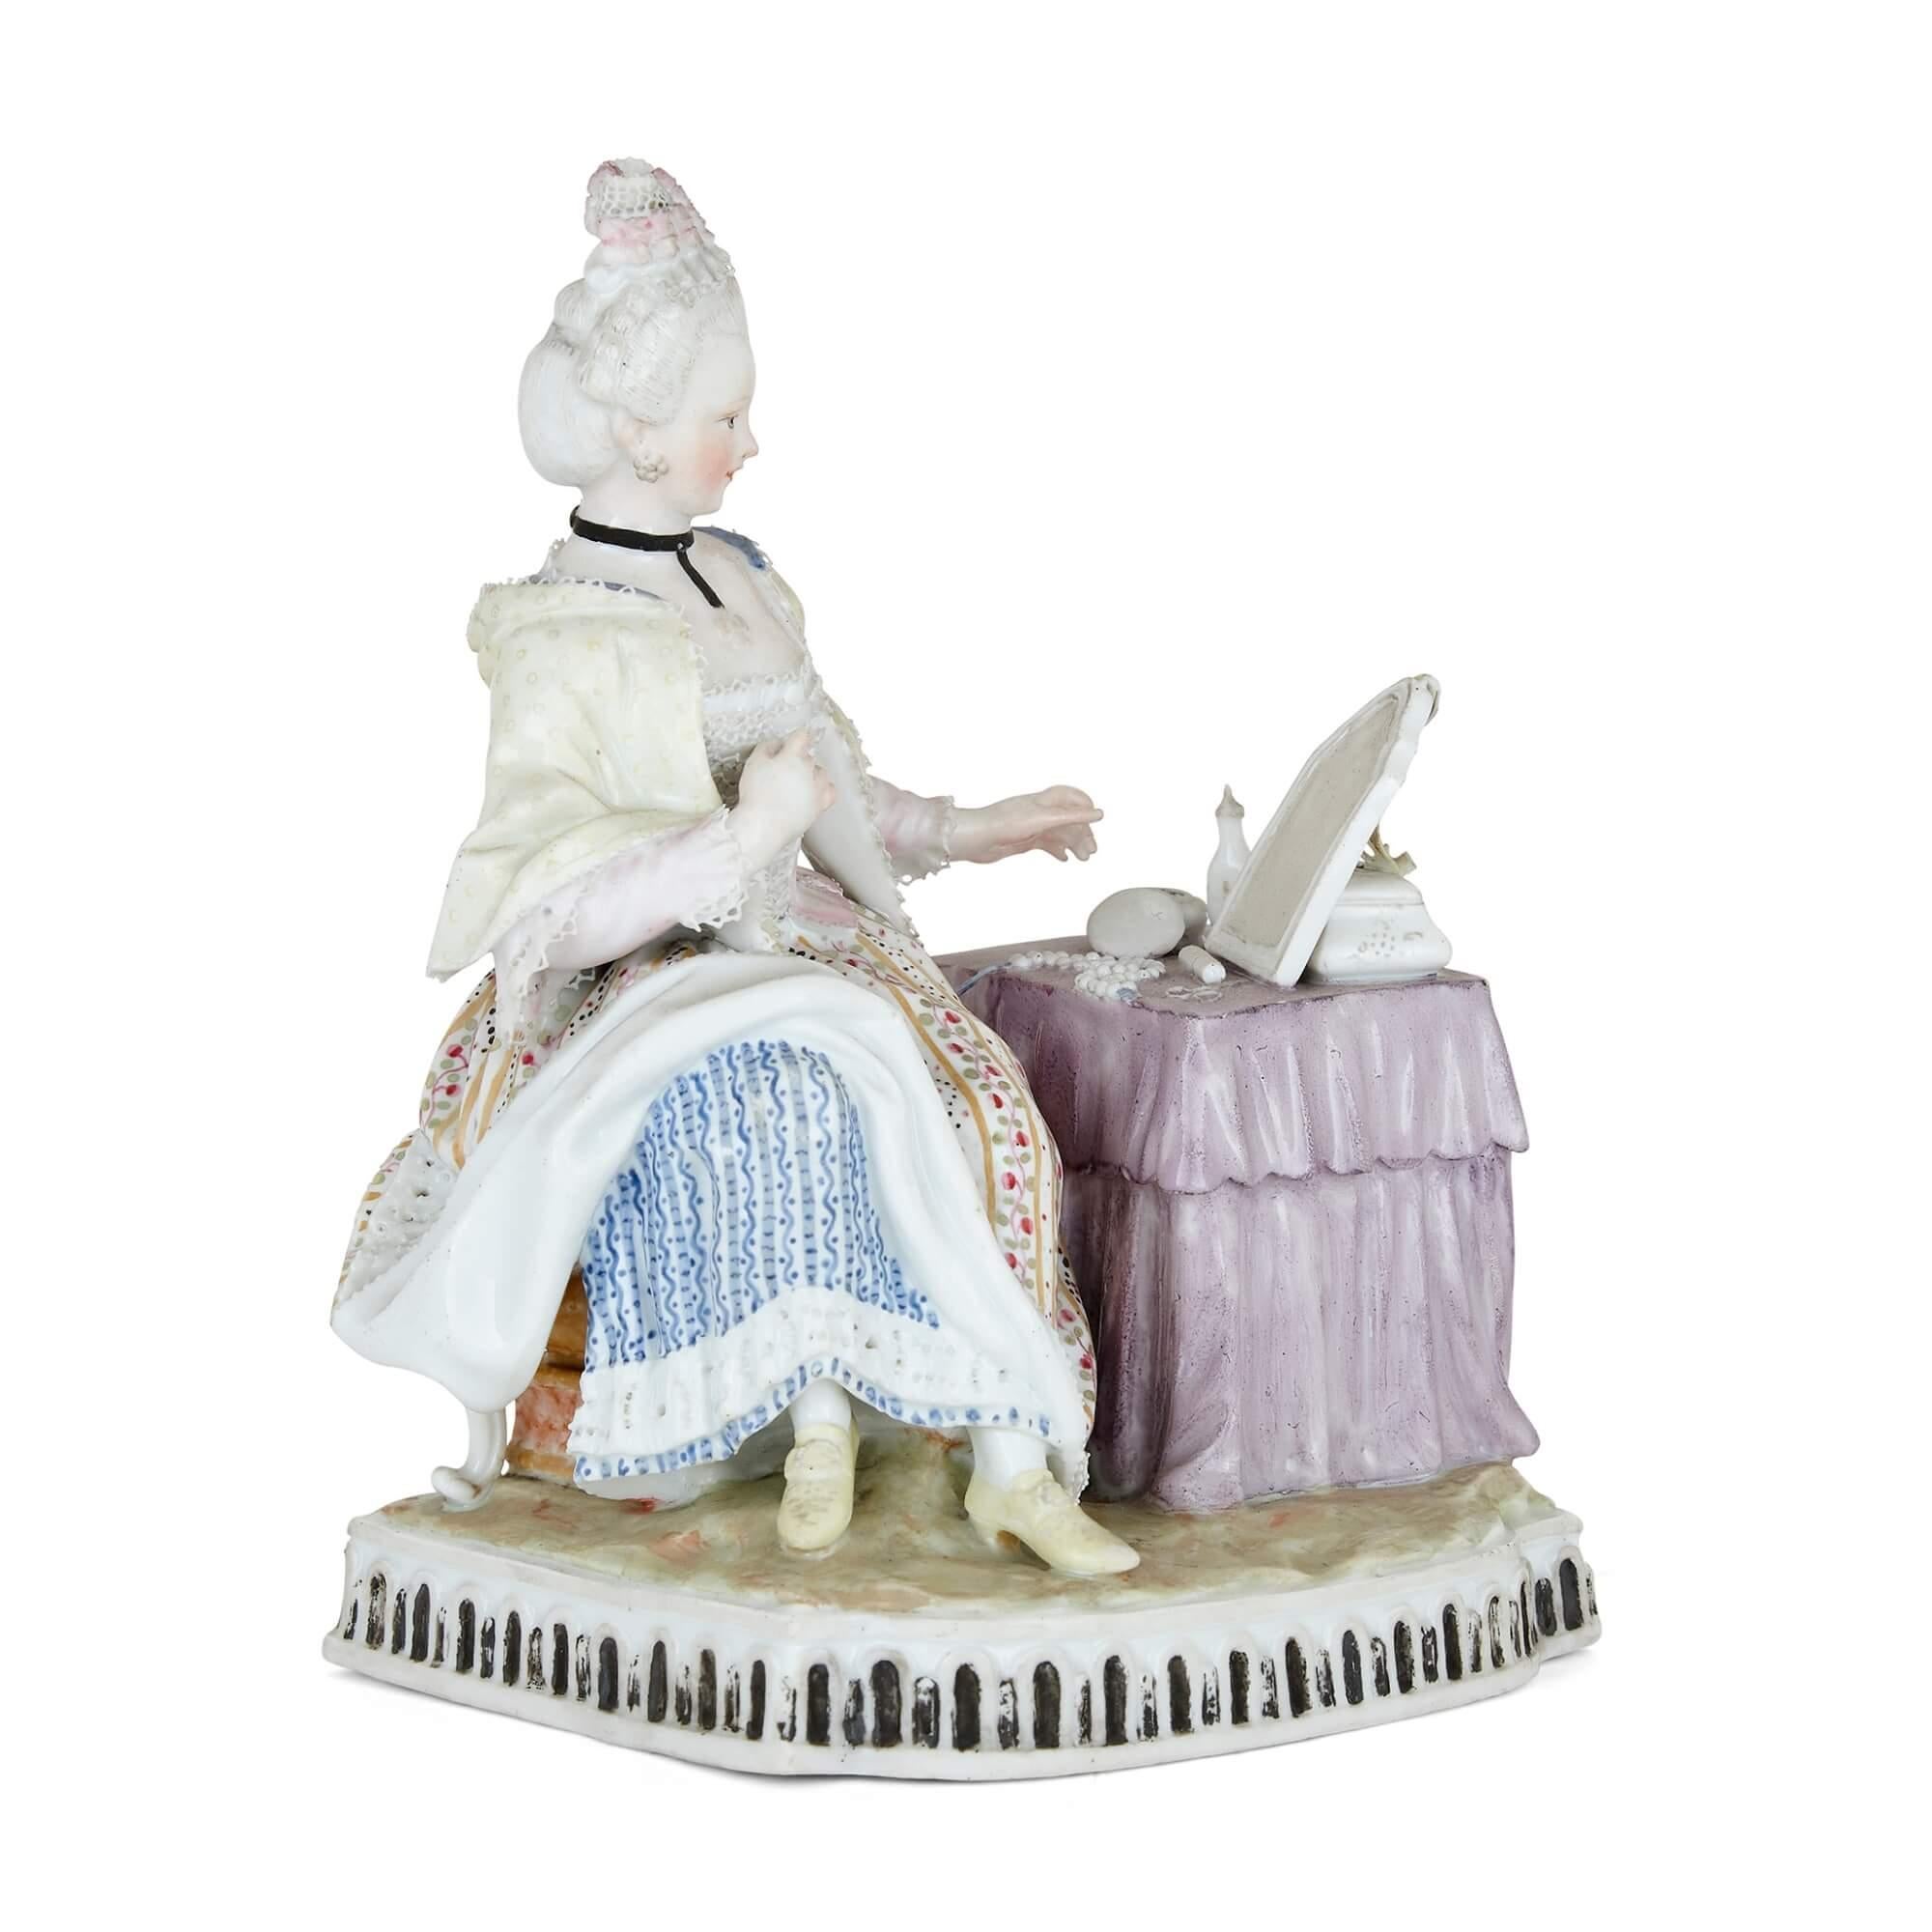 Porzellanfigur einer Frau im Rokoko-Stil von Meissen
Deutsch, 19. Jahrhundert
Höhe 15cm, Breite 12cm, Tiefe 8,5cm

Diese bezaubernde Porzellanfigur stellt eine Frau dar, die an ihrem Frisiertisch sitzt. In einem außergewöhnlich schönen Kleid sitzt